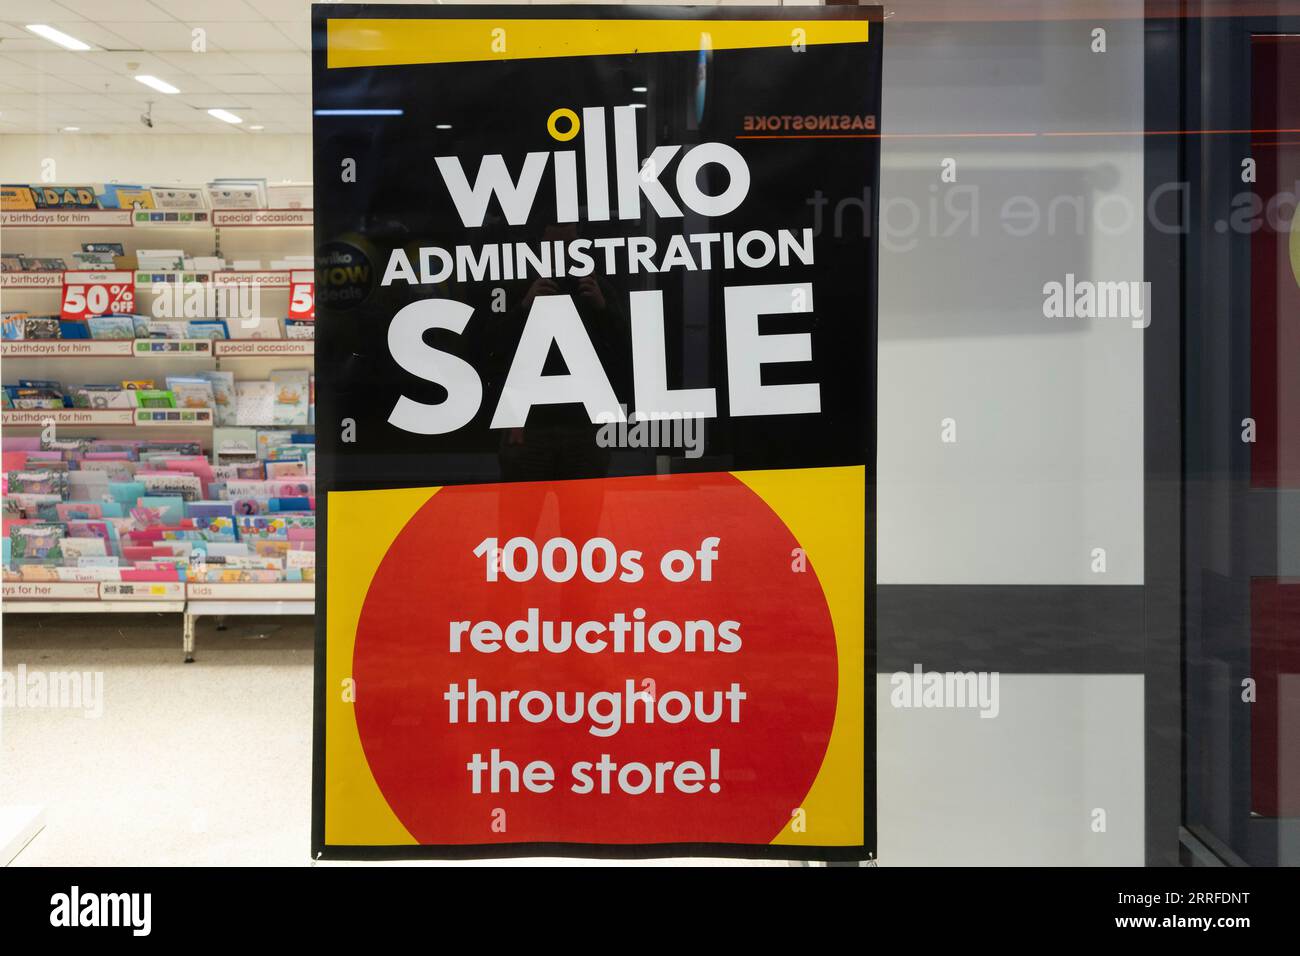 Wilko Store in Basingstoke wirbt für einen Verwaltungsverkauf nach finanziellen Schwierigkeiten und kann alle Geschäfte schließen, wenn kein Käufer gefunden wird. England Stockfoto